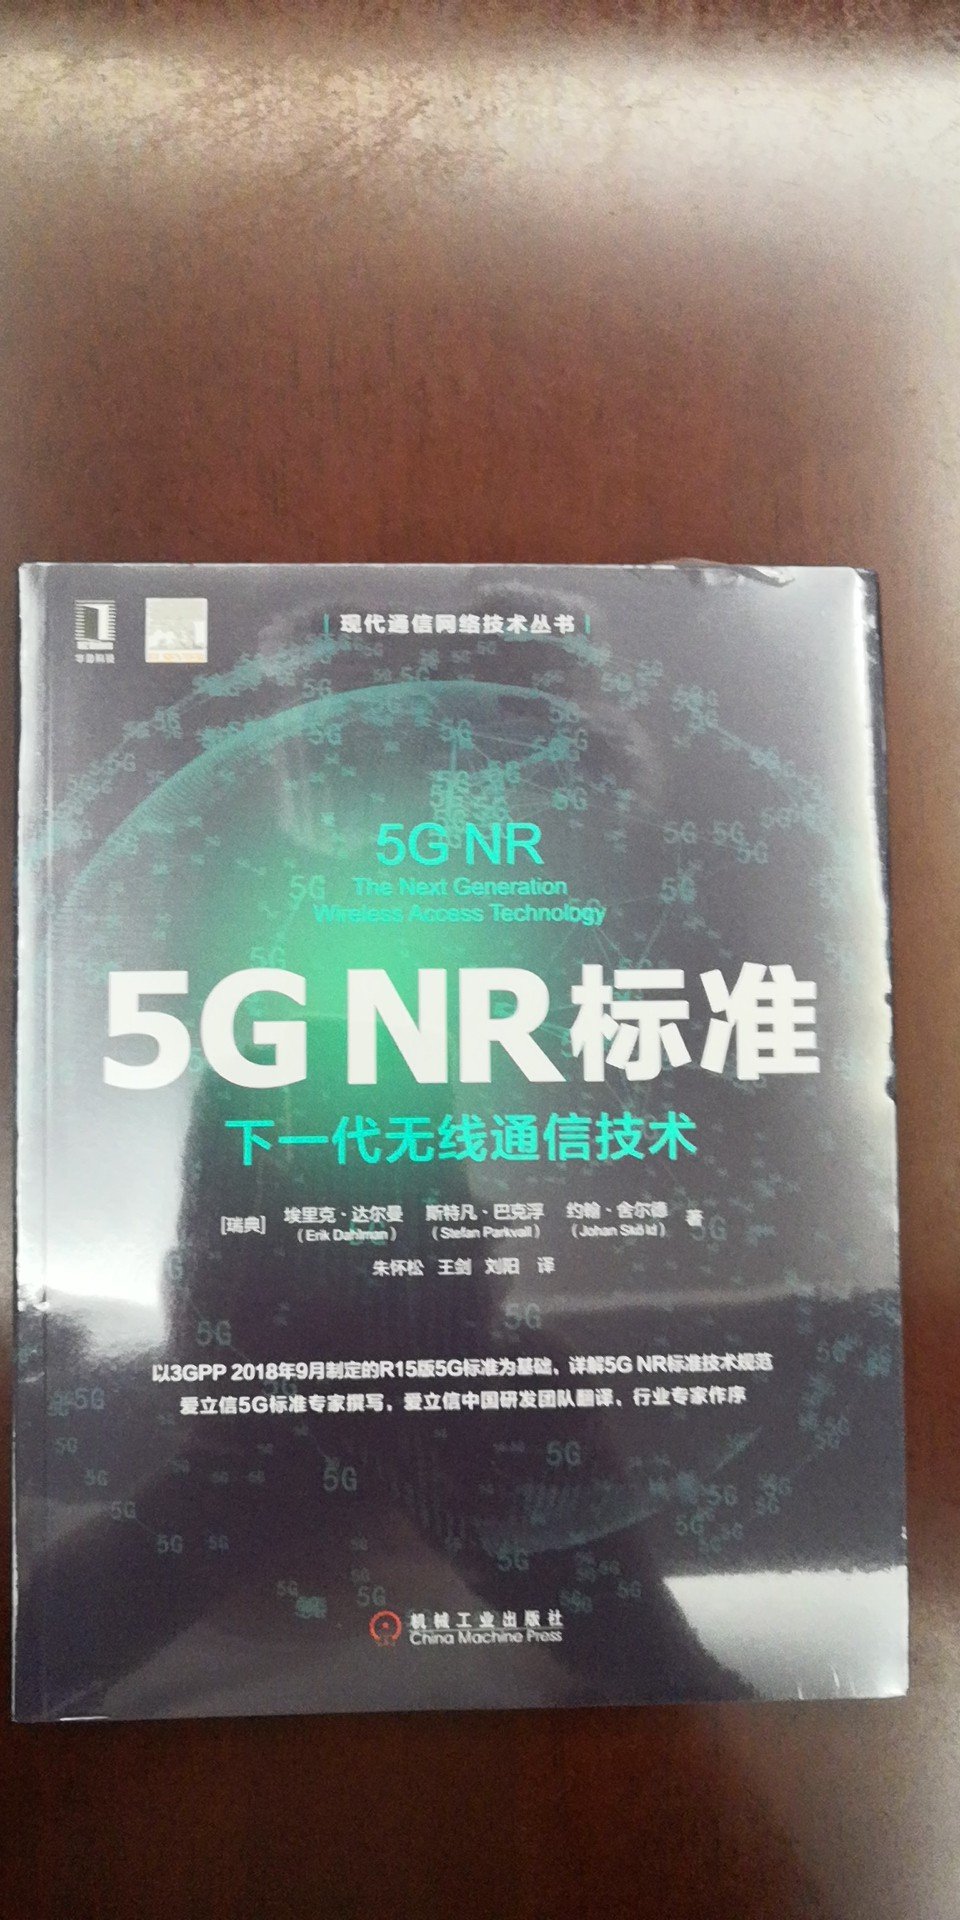 下一代移动通信技术 5GNR